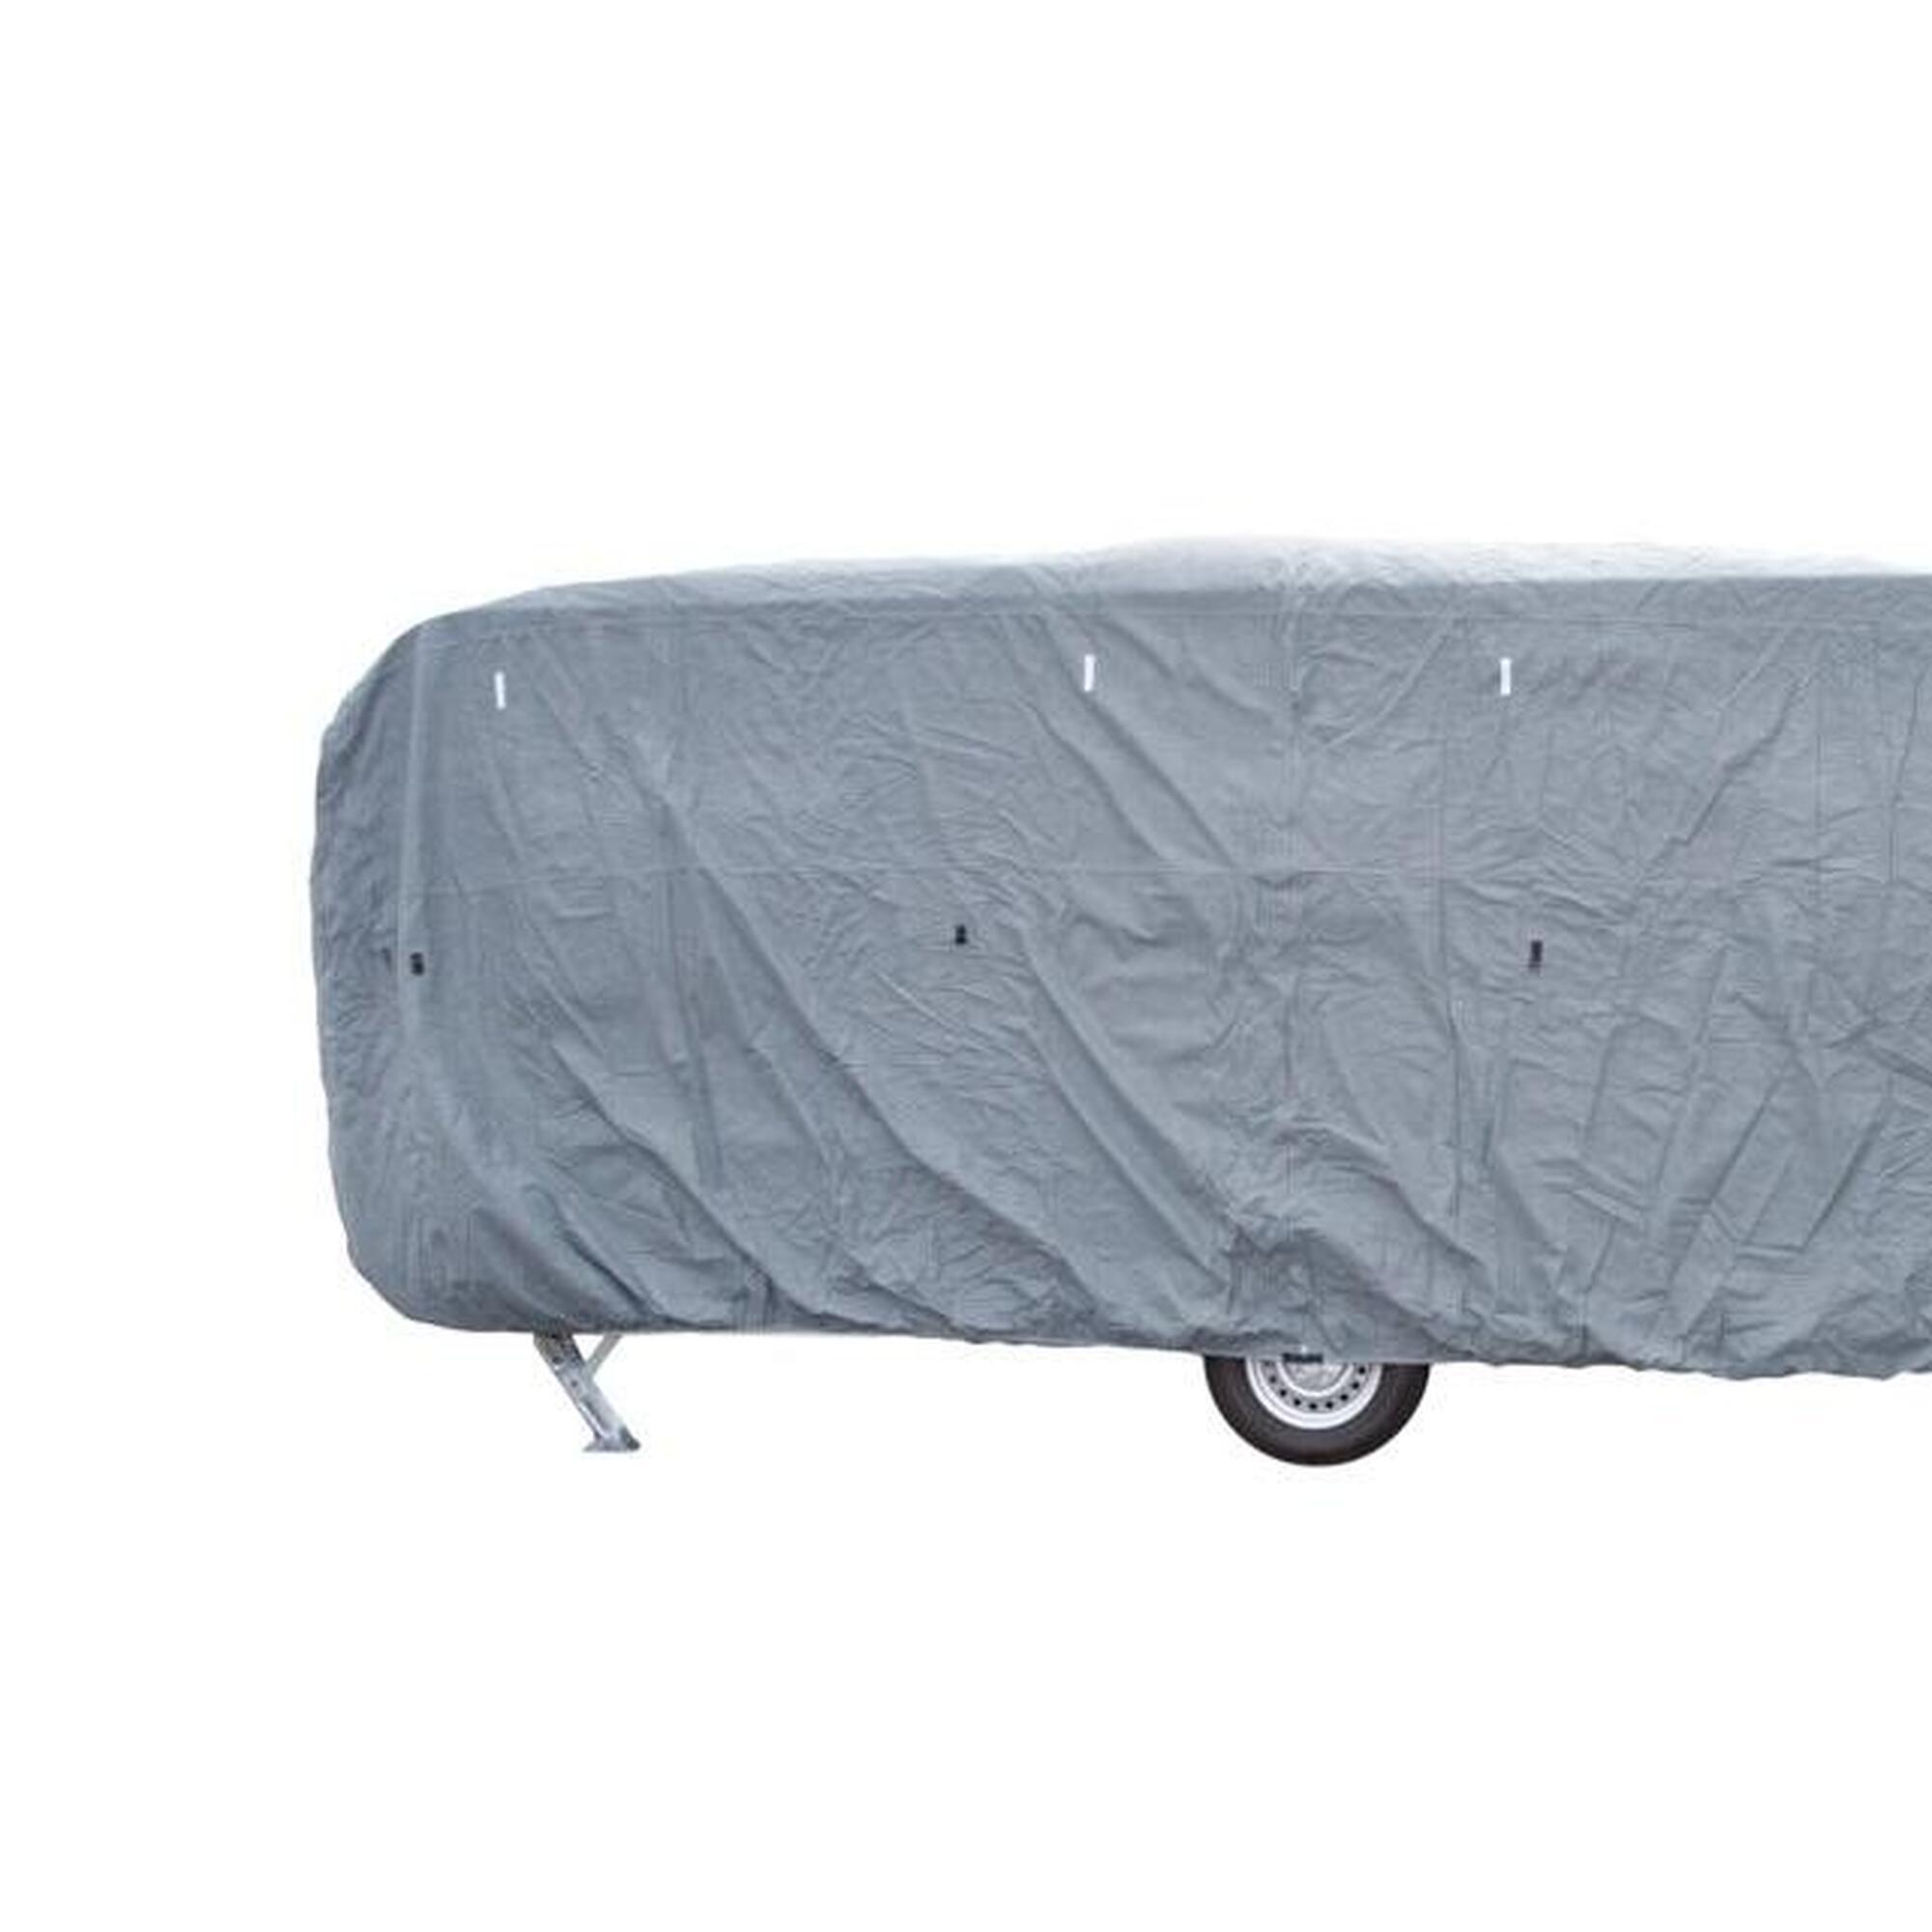 Travellife caravane couverture basic 450x240x220cm